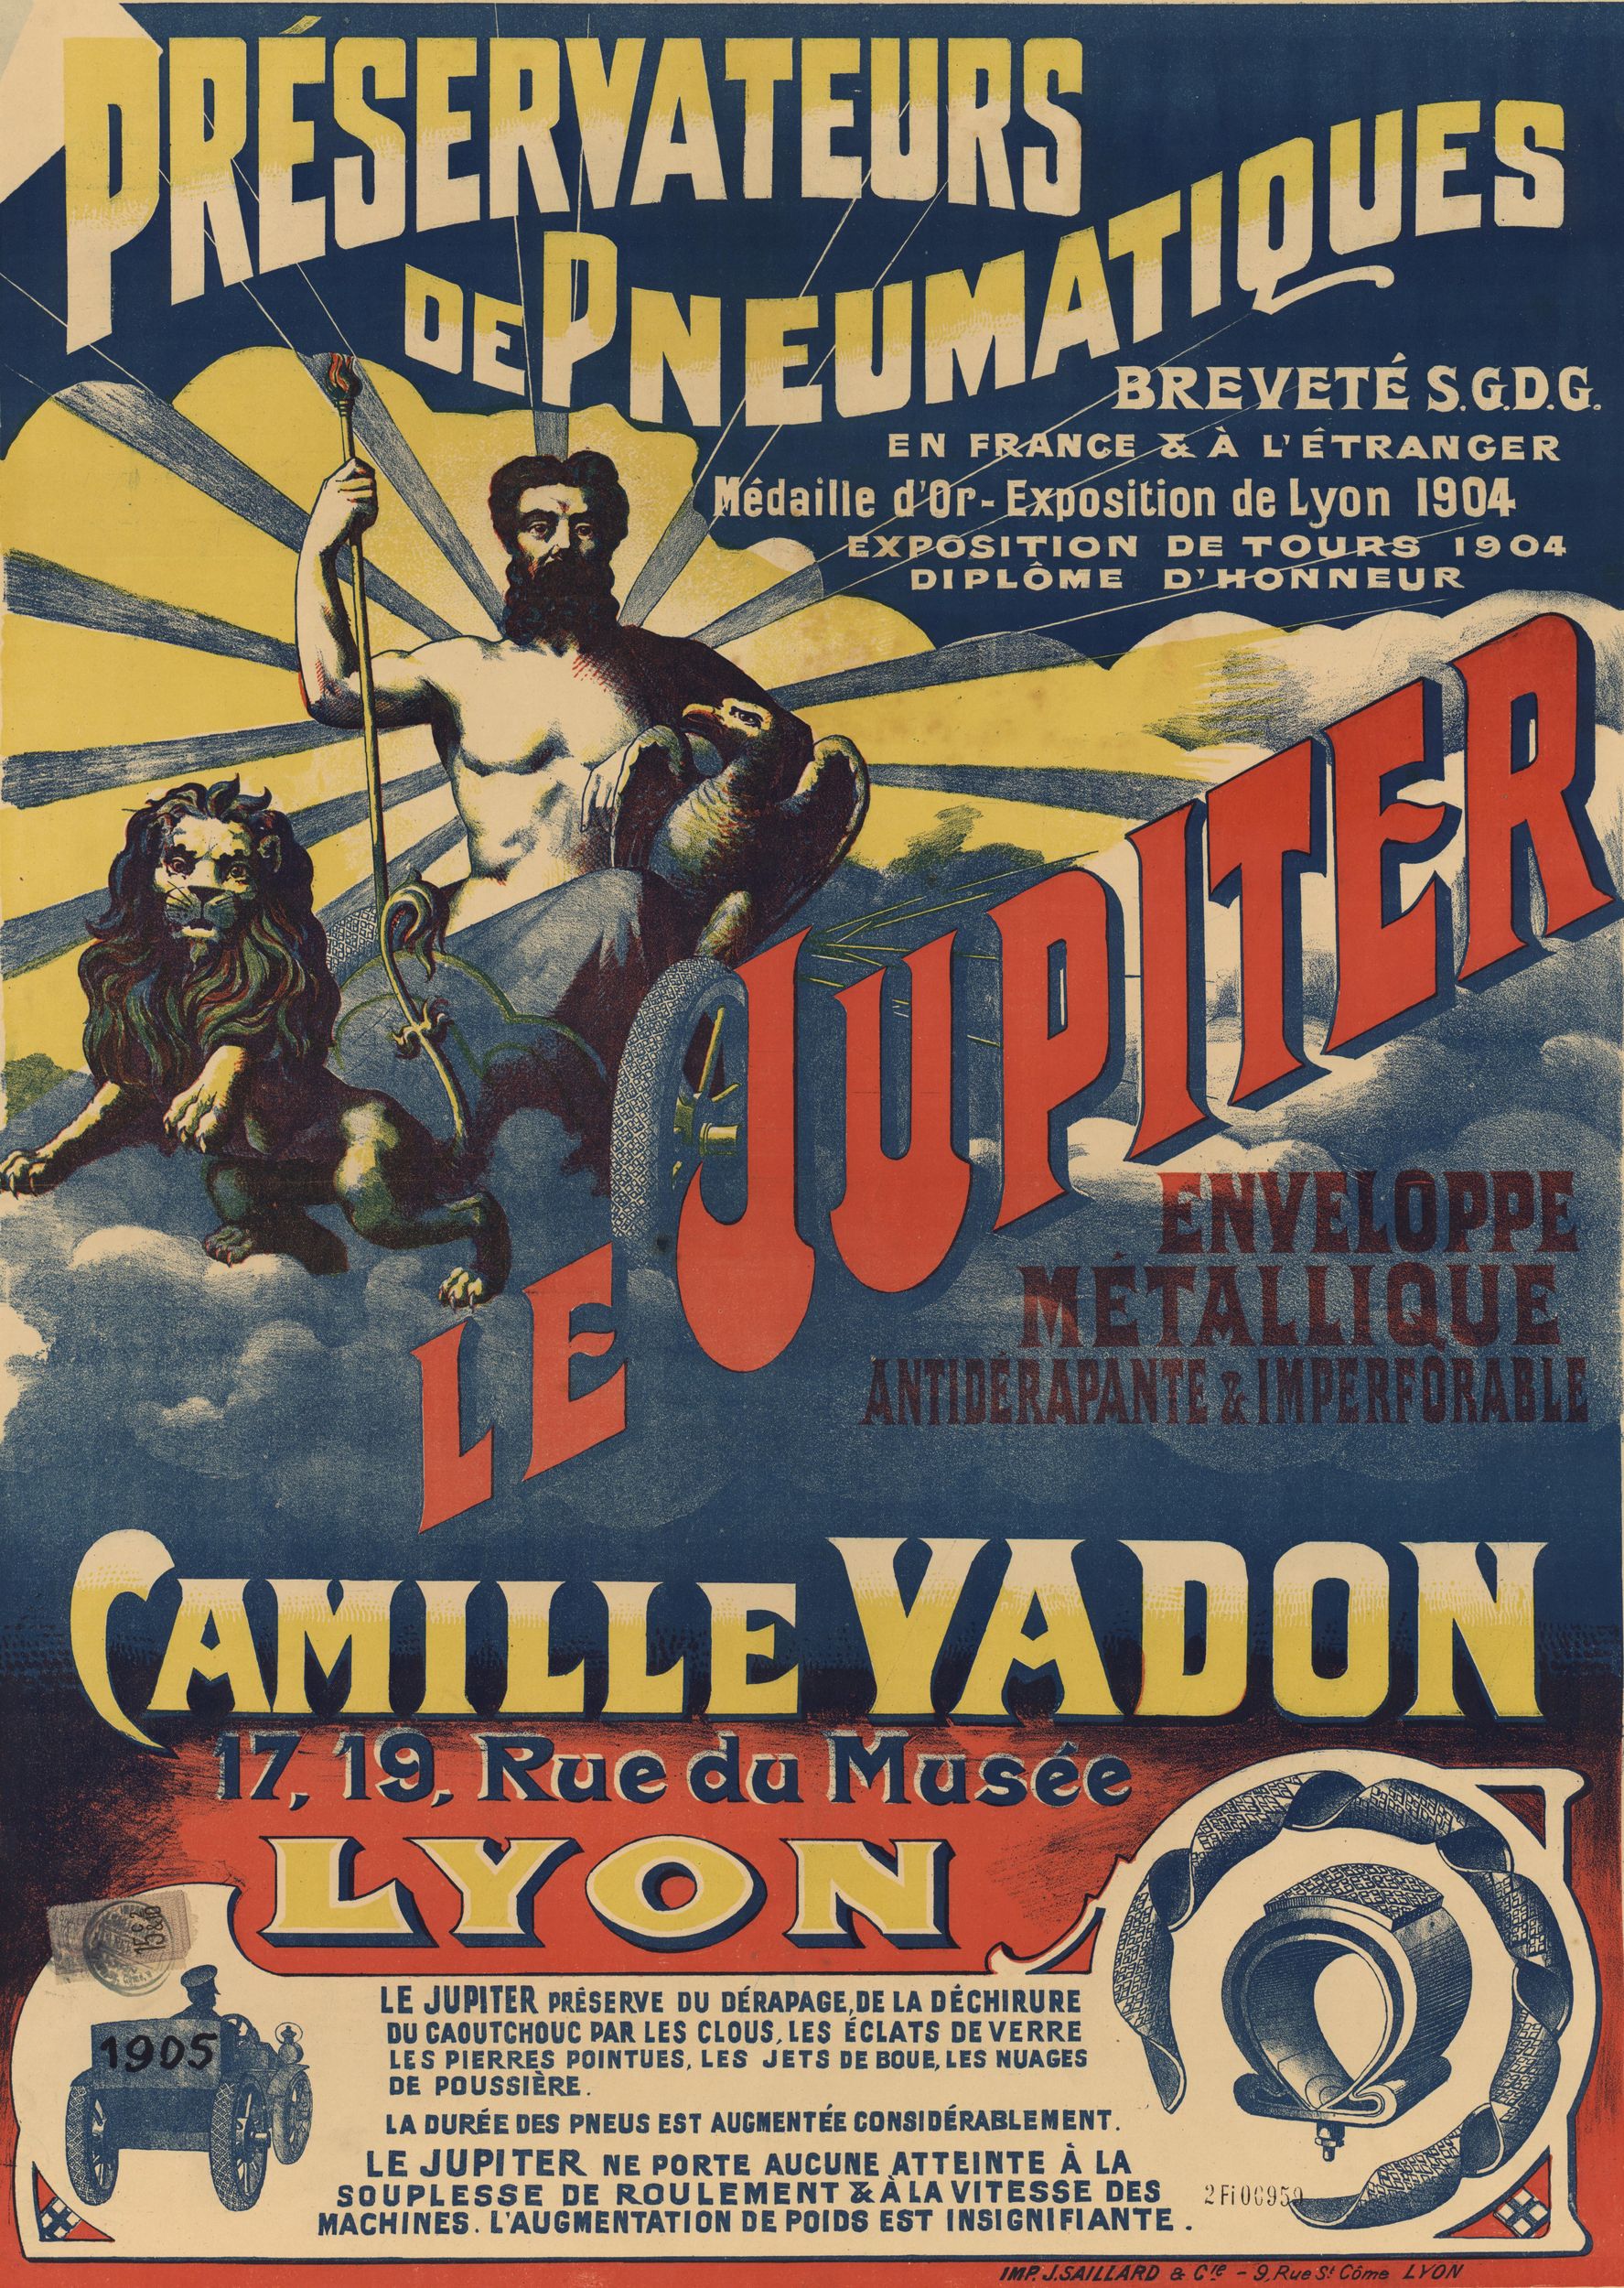 Le Jupiter, préservateur de pneumatiques - Enveloppe métallique antidérapante et imperforable : affiche publicitaire couleur (1905, cote : 2FI/959)